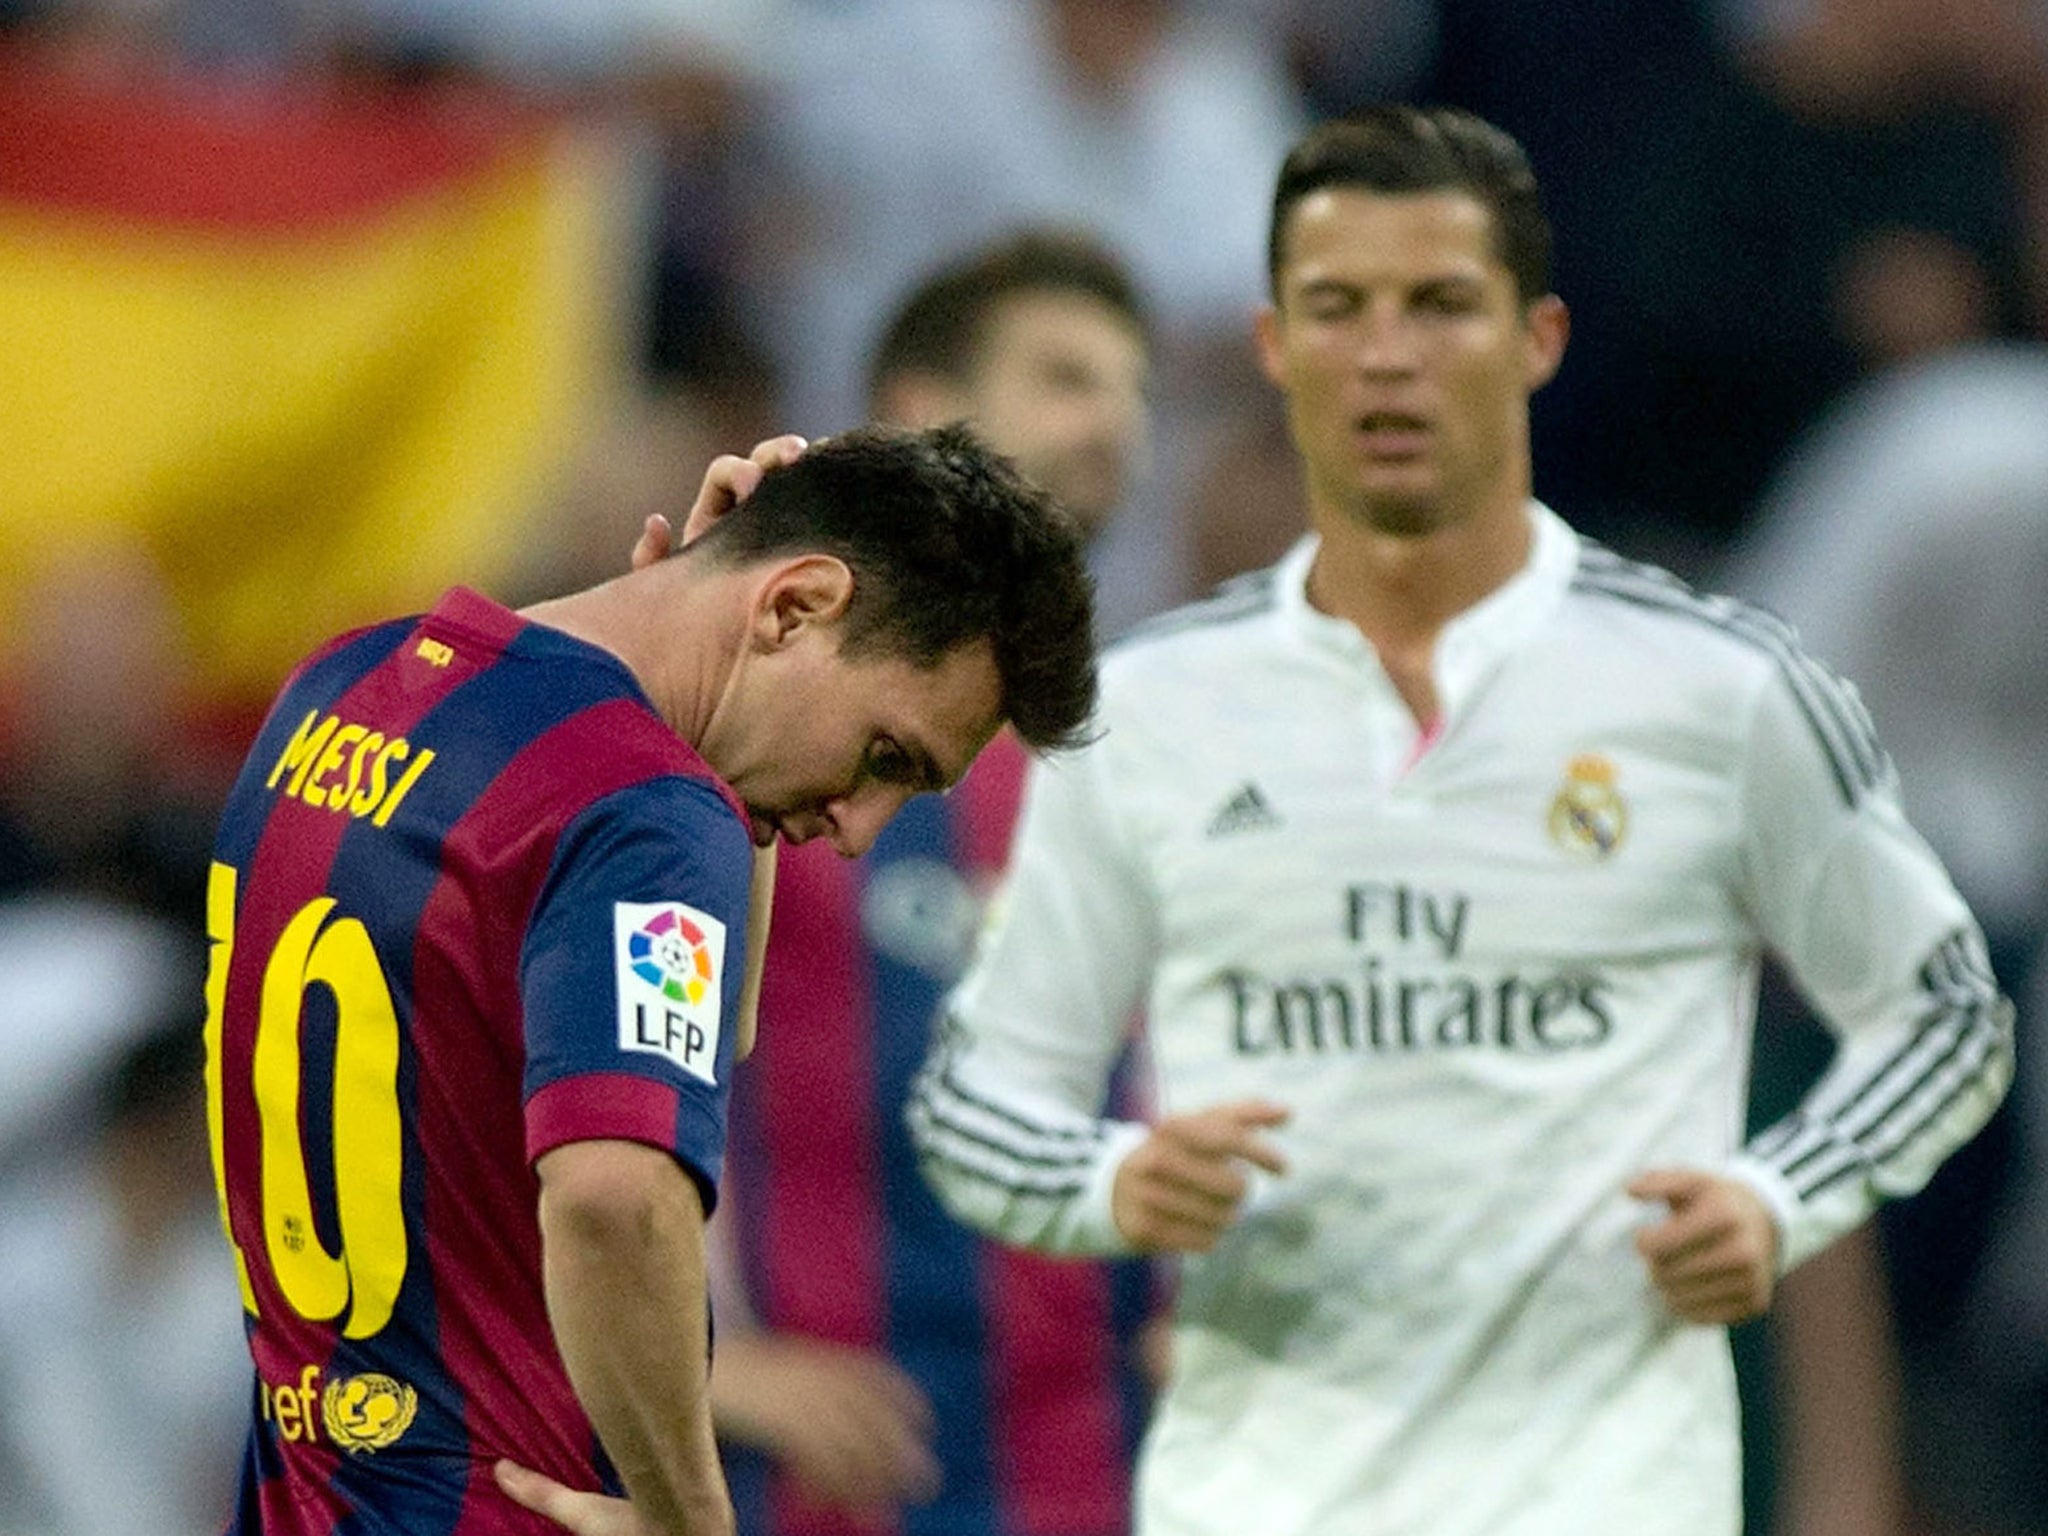 Cristiano Ronaldo And Messi Fight